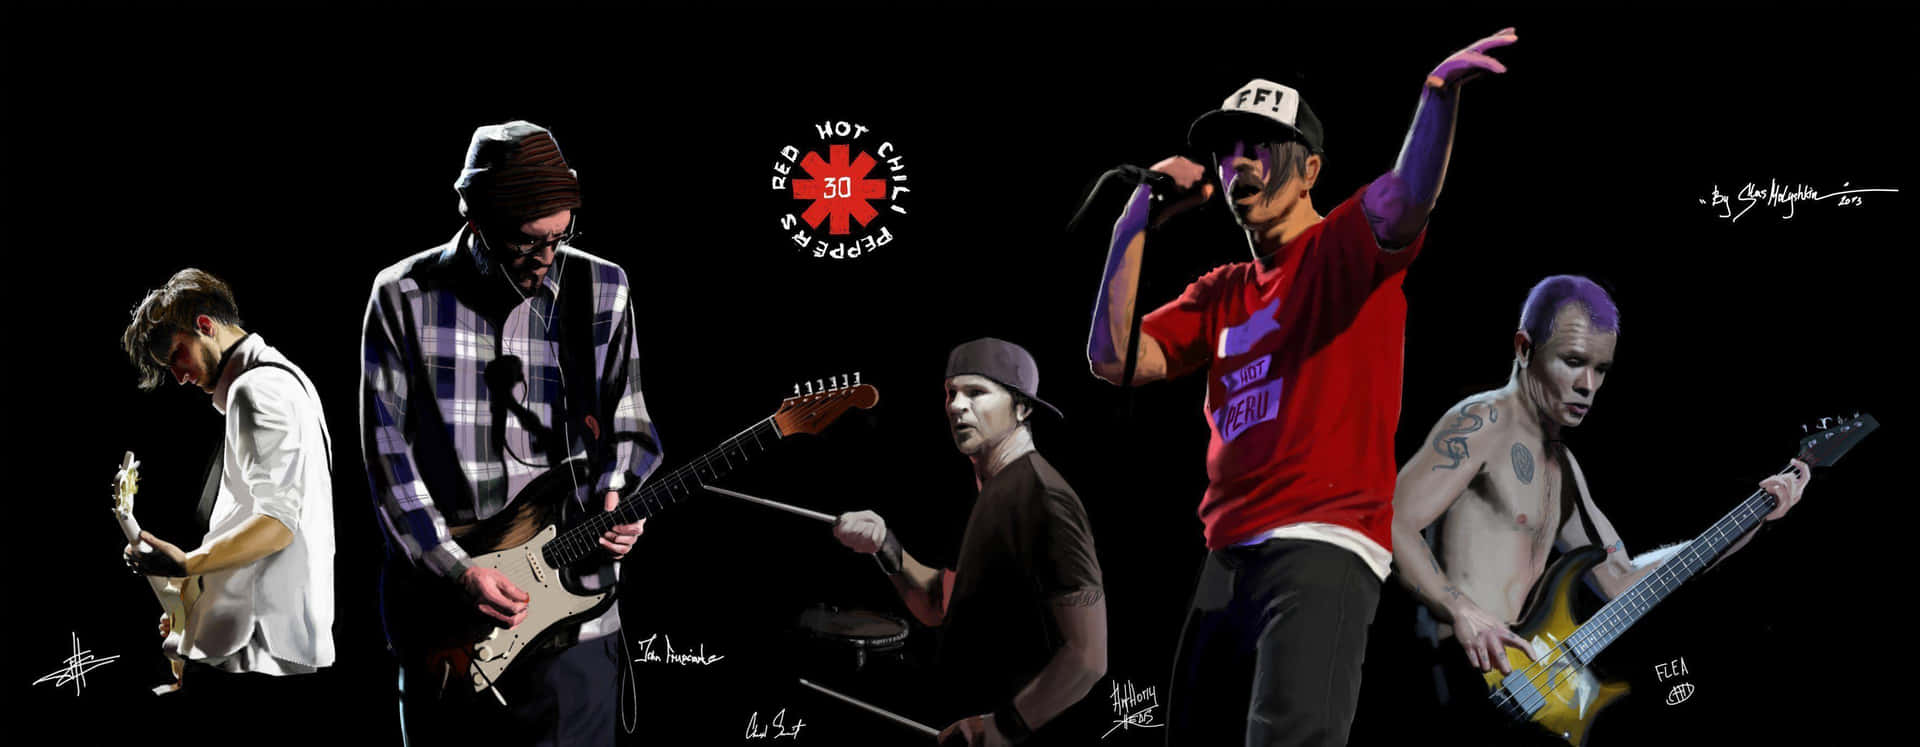 Diered Hot Chili Peppers Betreten Die Bühne, Um Ihre Begeisterten Fans Zu Rocken Wallpaper